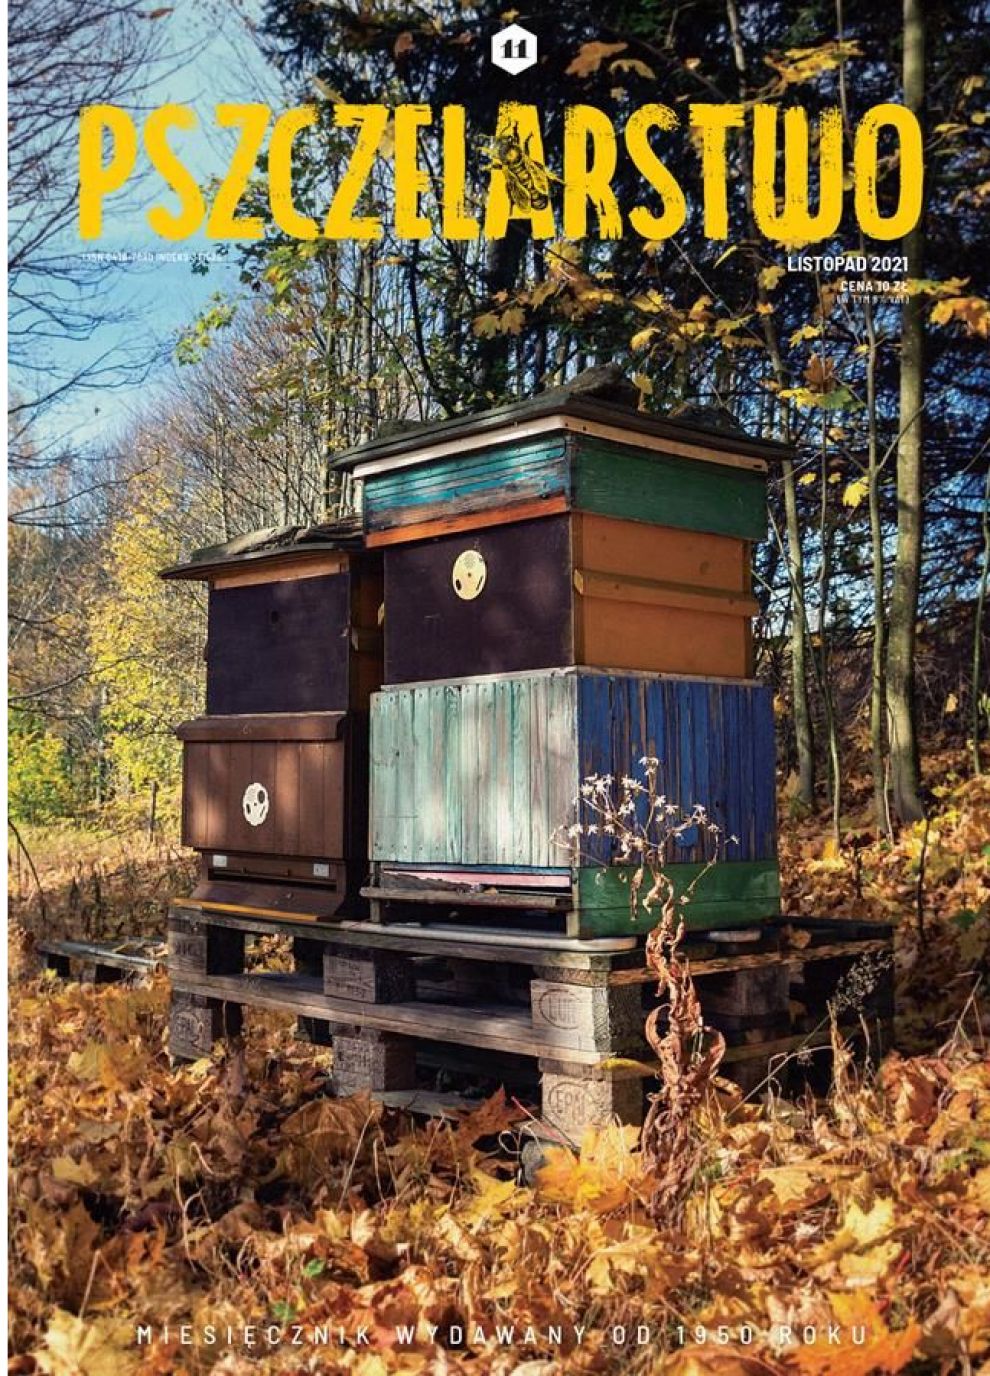 Miesięcznik Pszczelarstwo - Listopad 2021